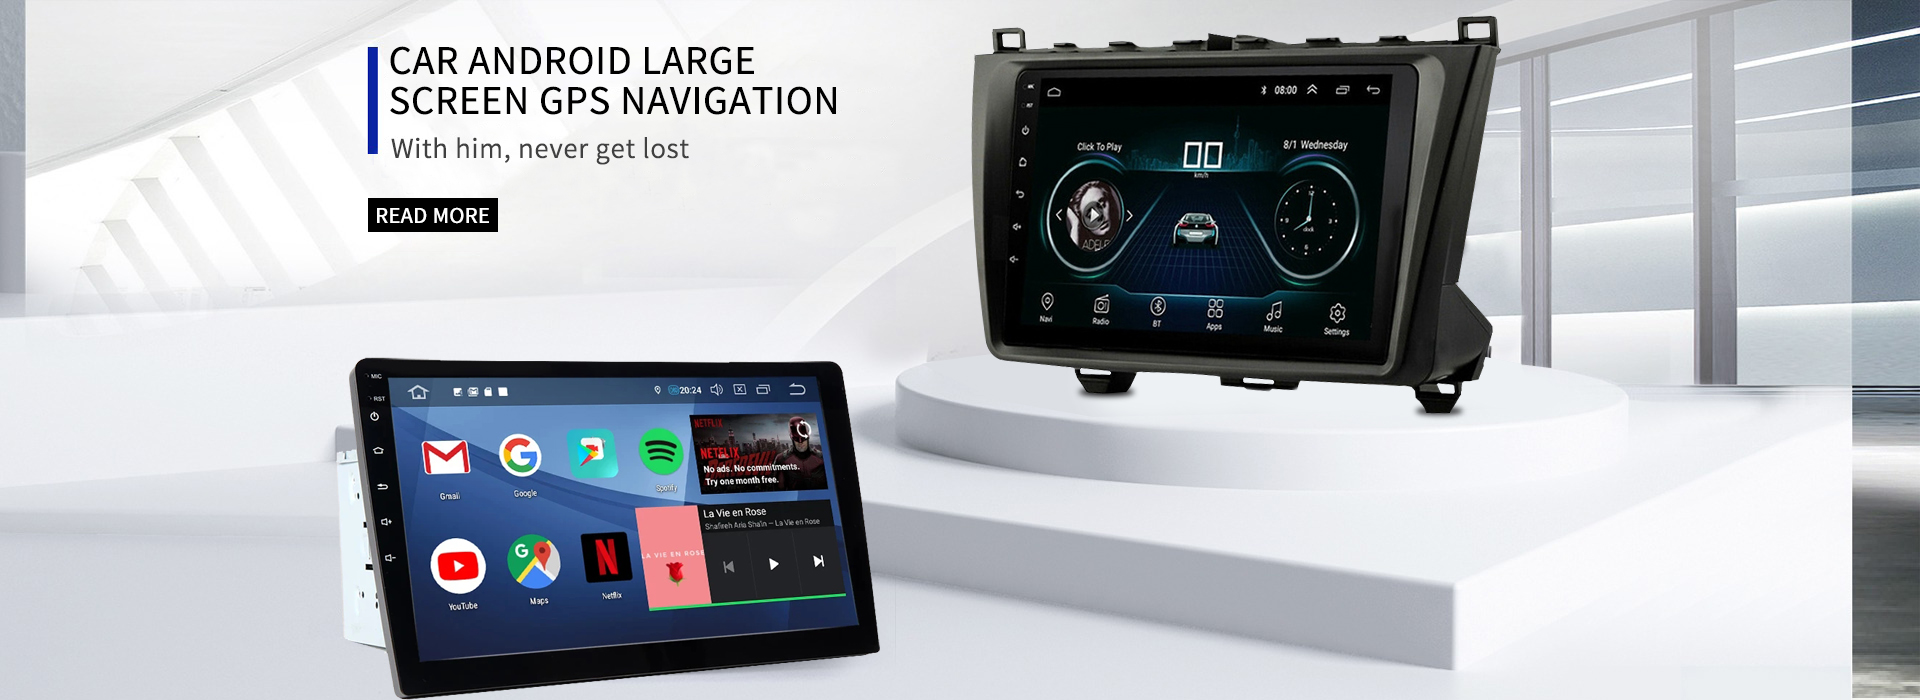 Auto Android suure ekraaniga GPS-navigeerimine